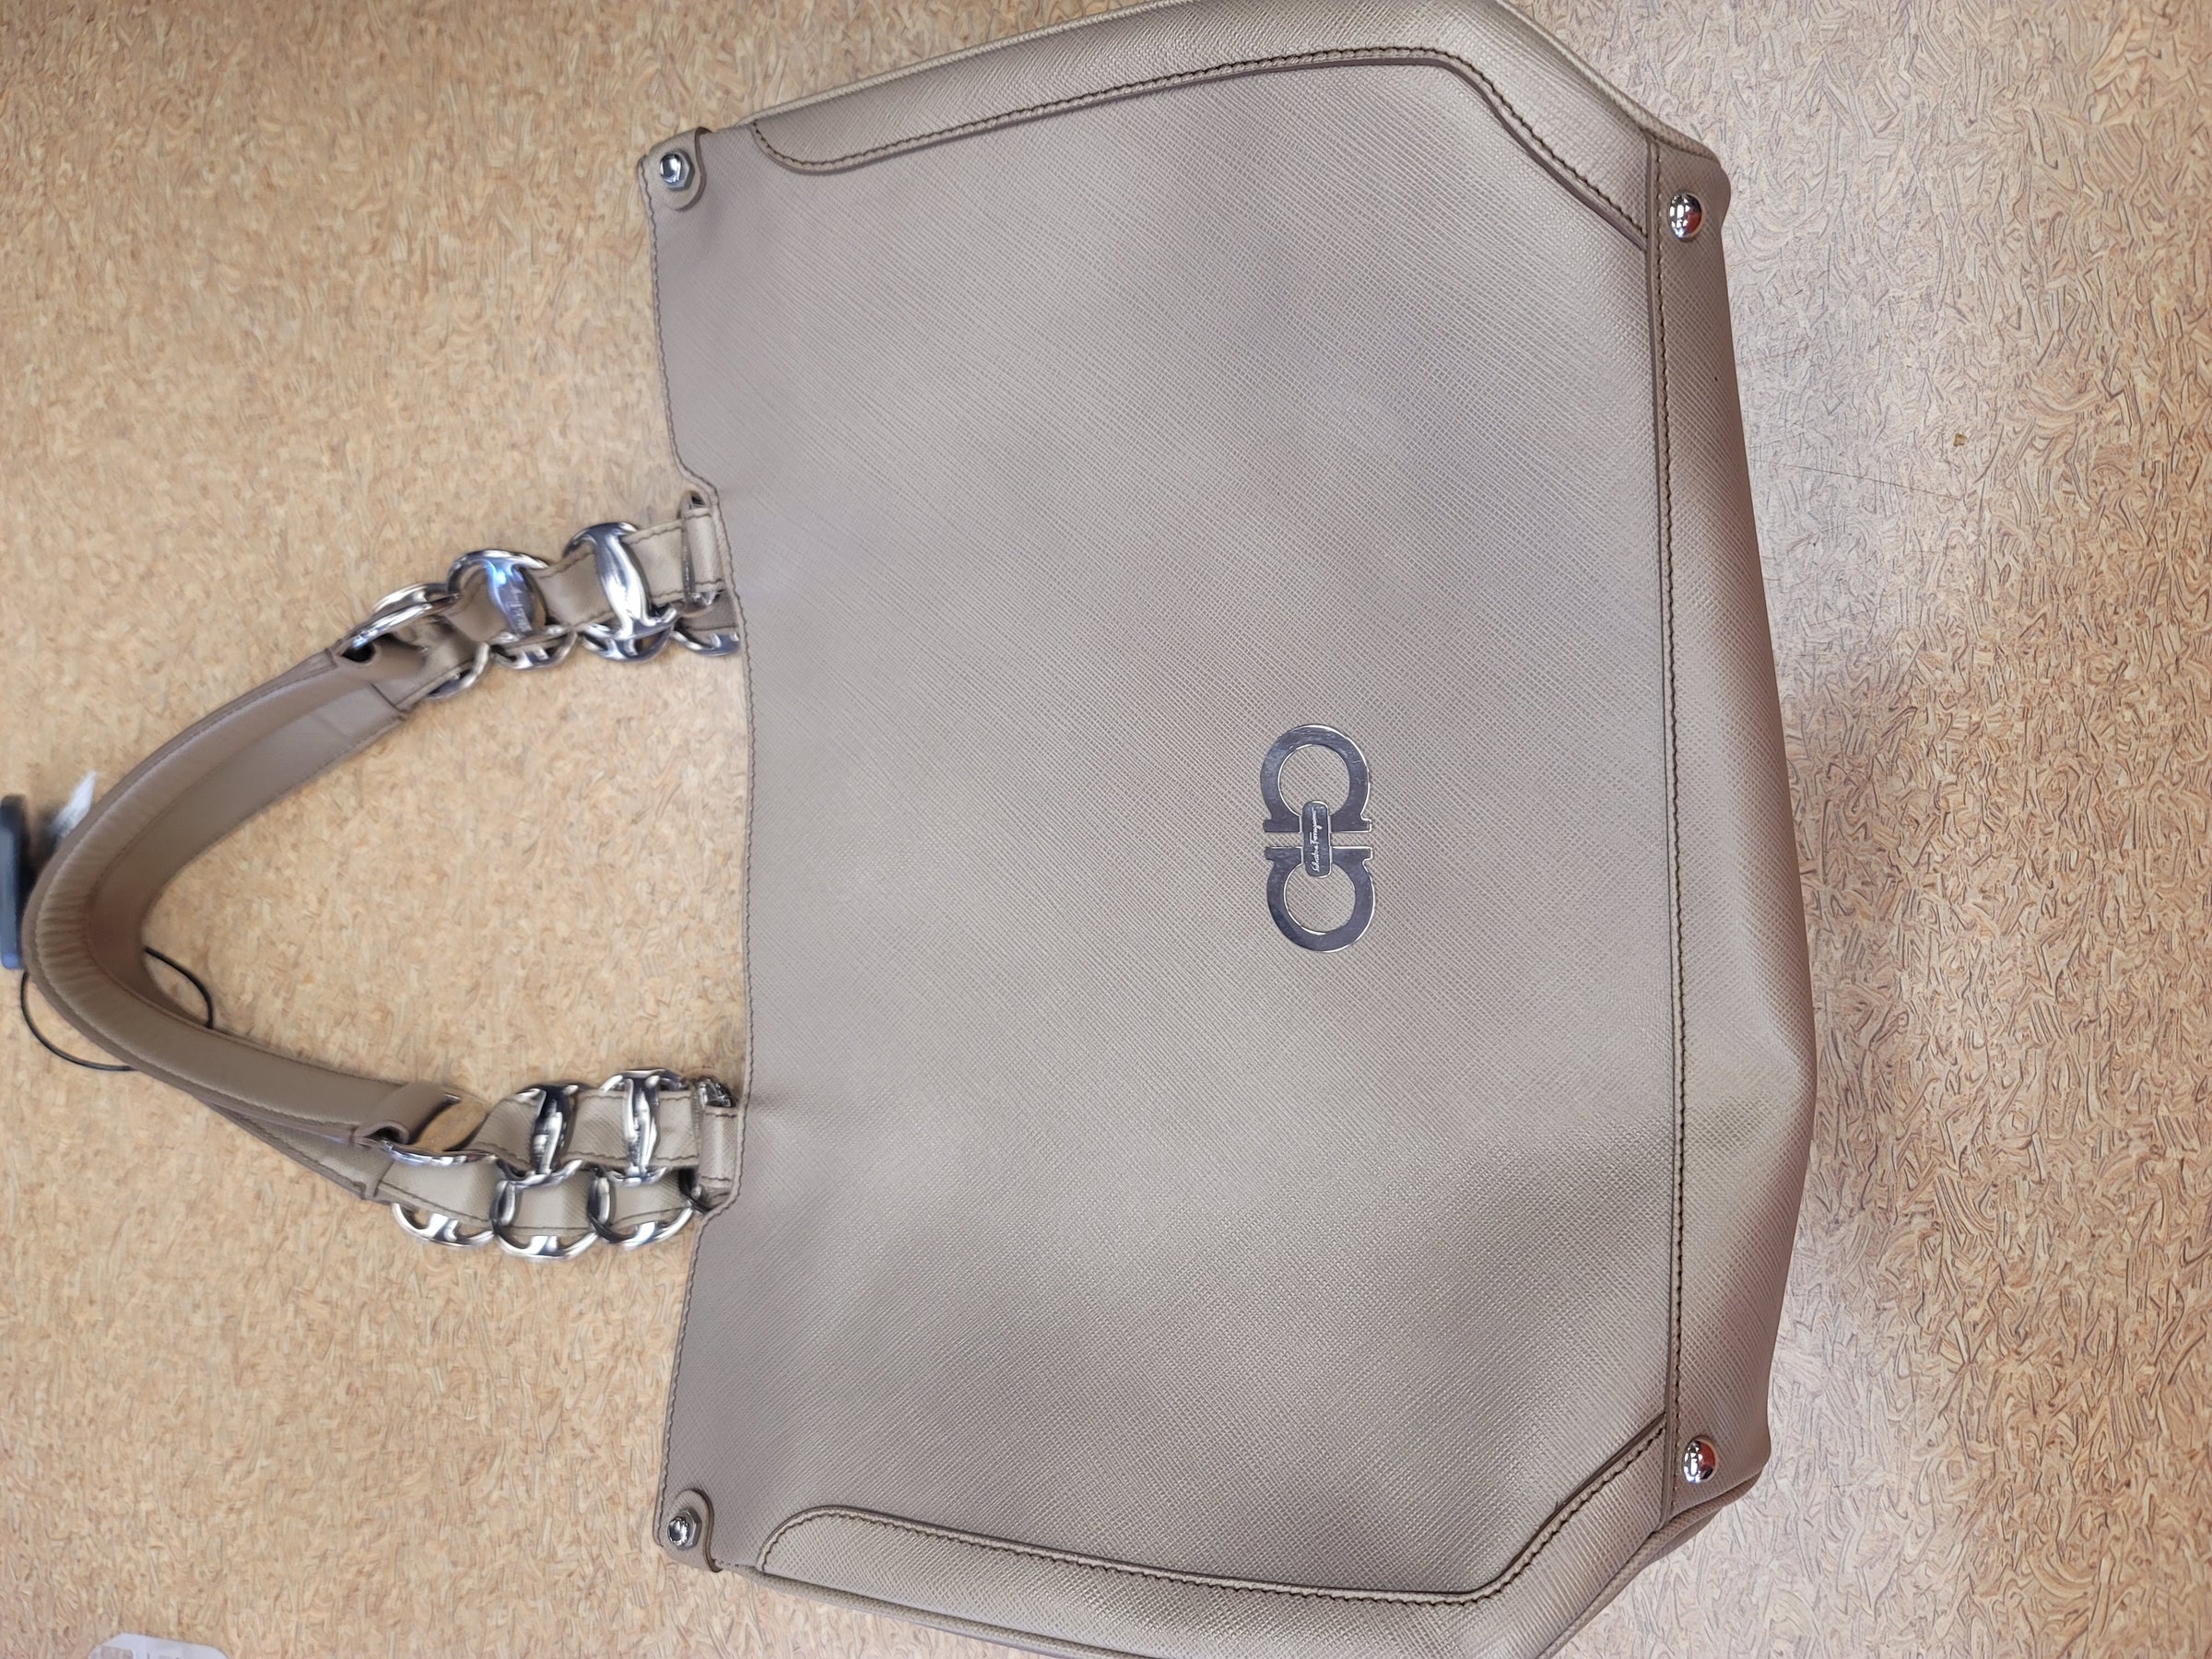 Handbag Luxury Designer By Louis Vuitton Size: Medium – Clothes Mentor  Buford GA #176